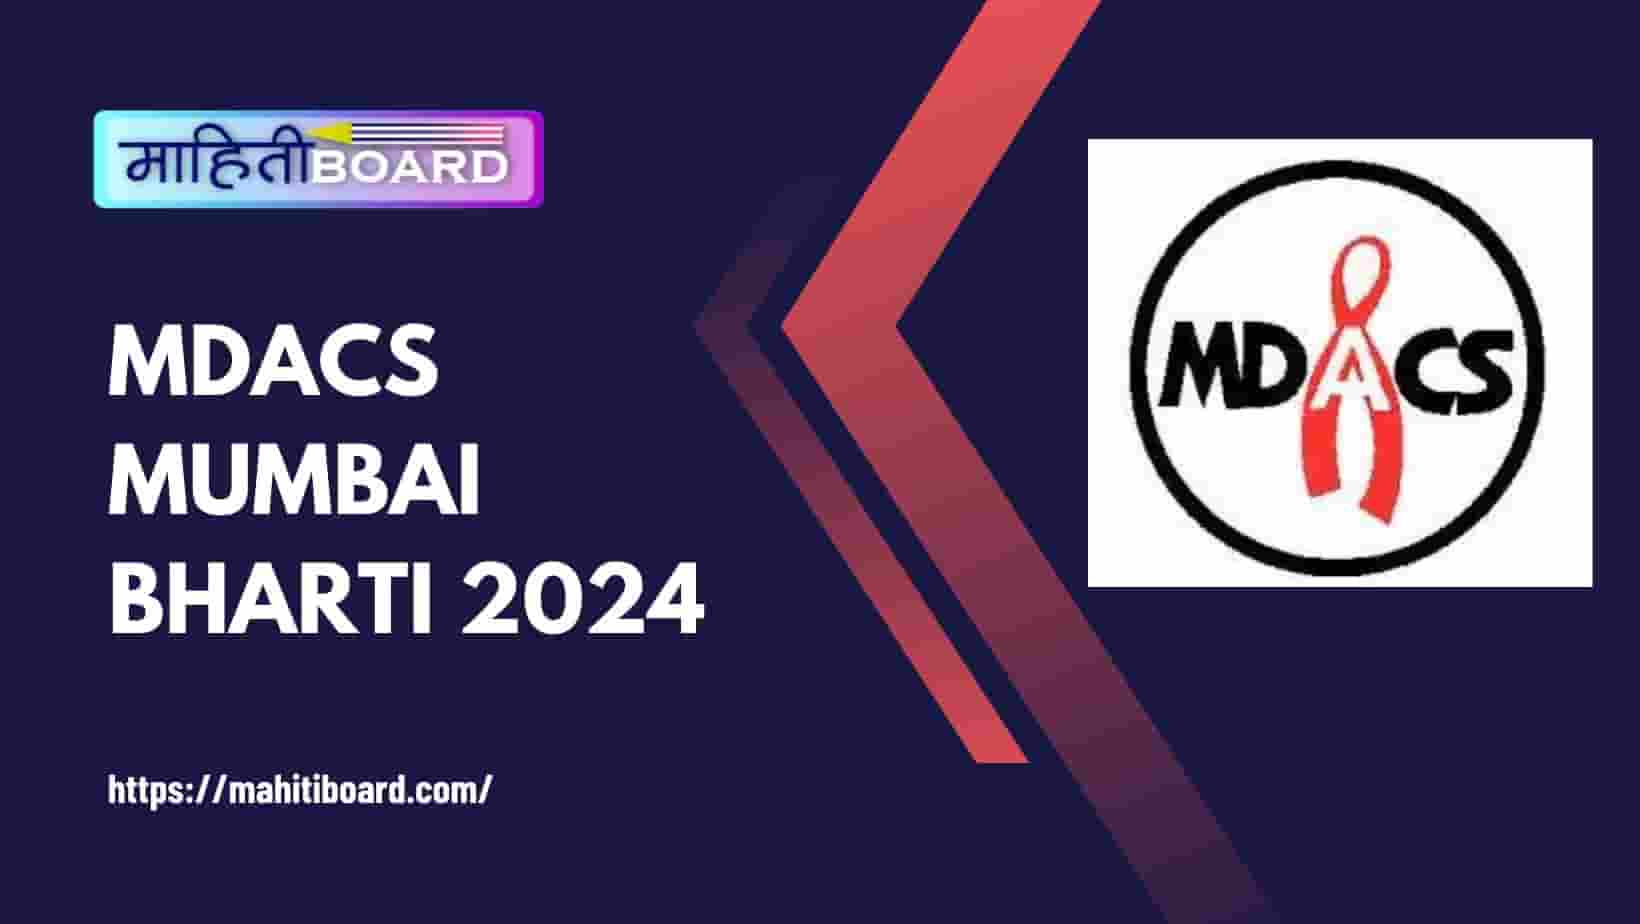 MDACS Mumbai Bharti 2024